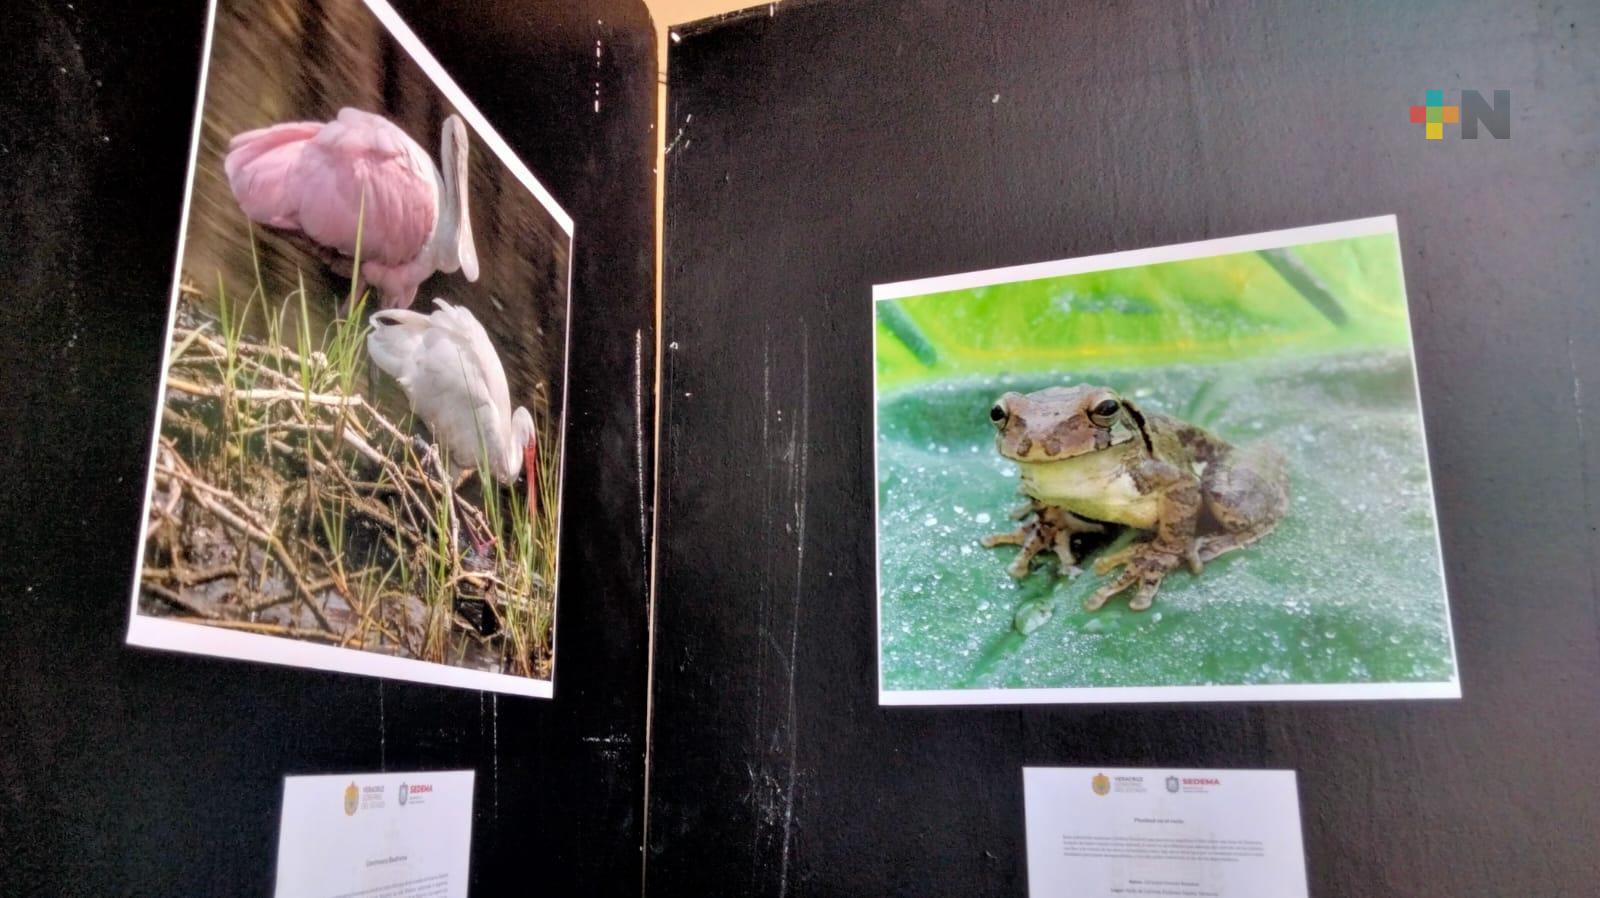 Inauguran exposición fotográfica «Miradas de transformación», en Xalapa